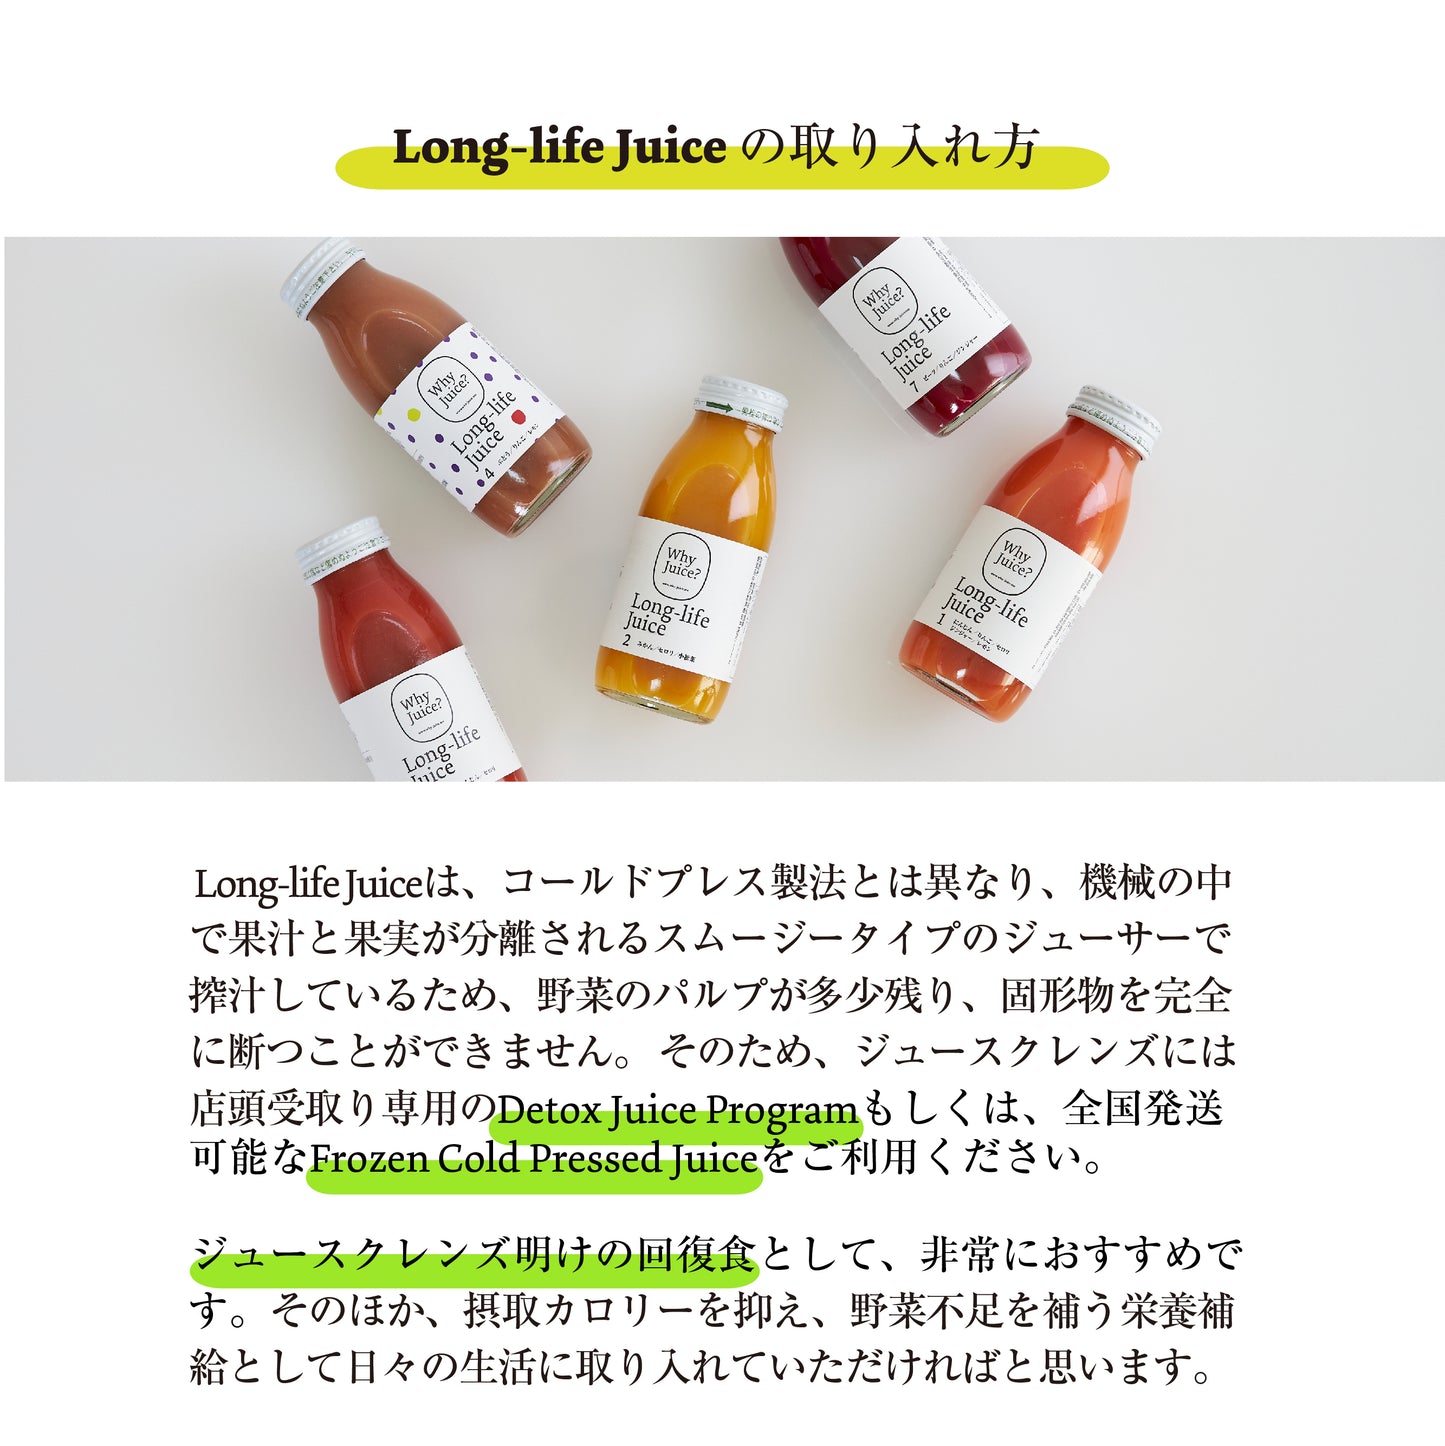 Long-life Juice1：にんじんミックス (20本入)